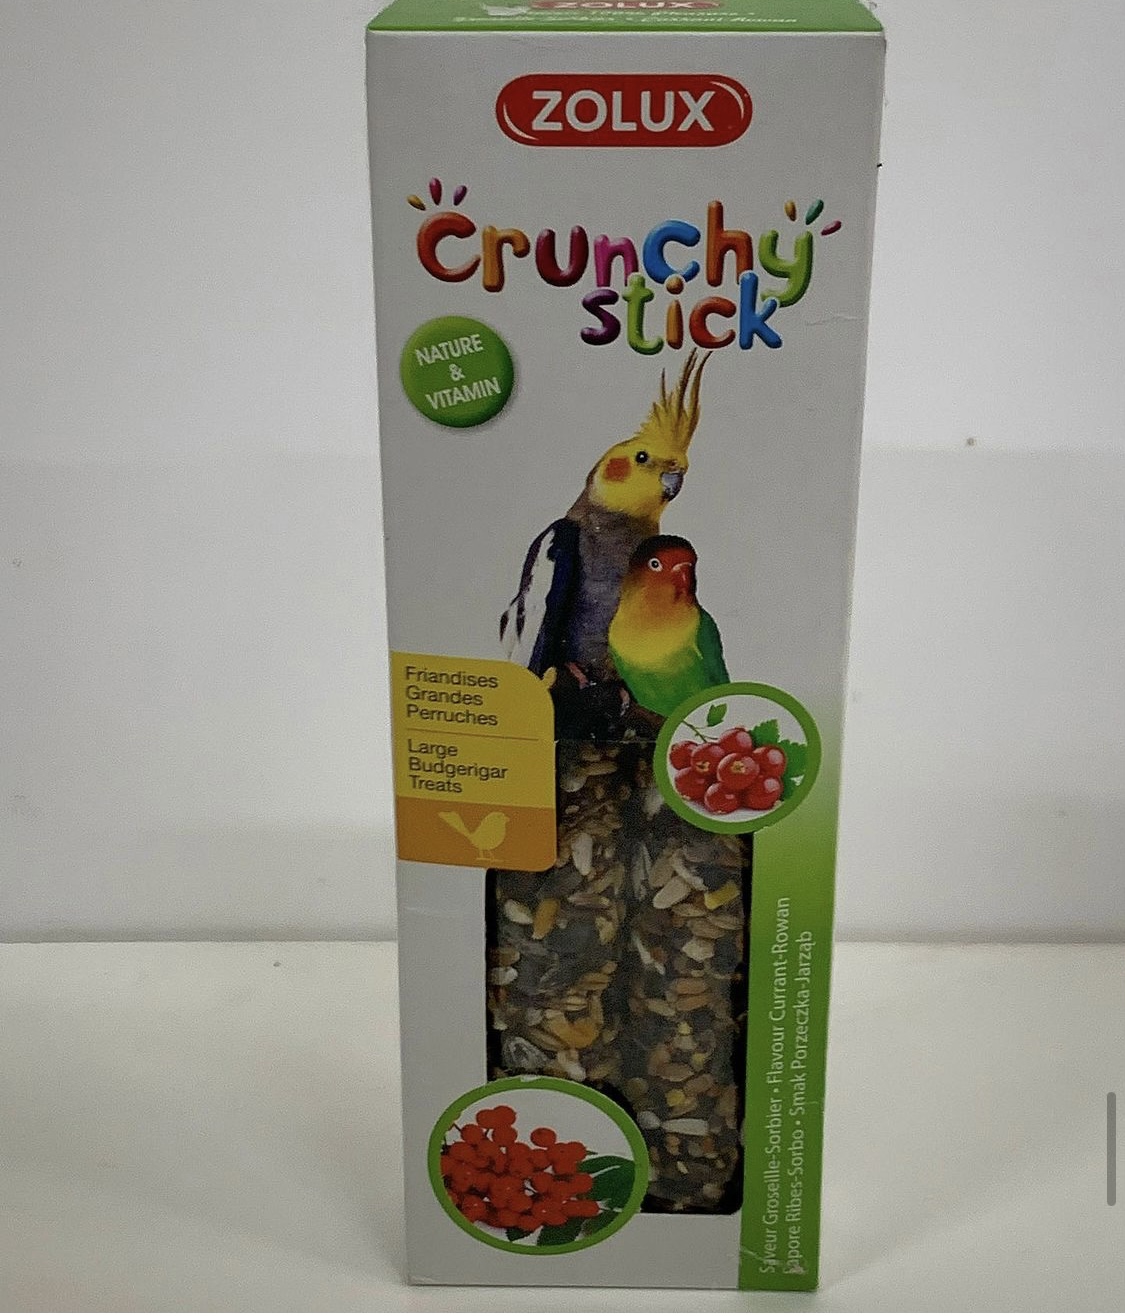 Zolux Crunchy stick